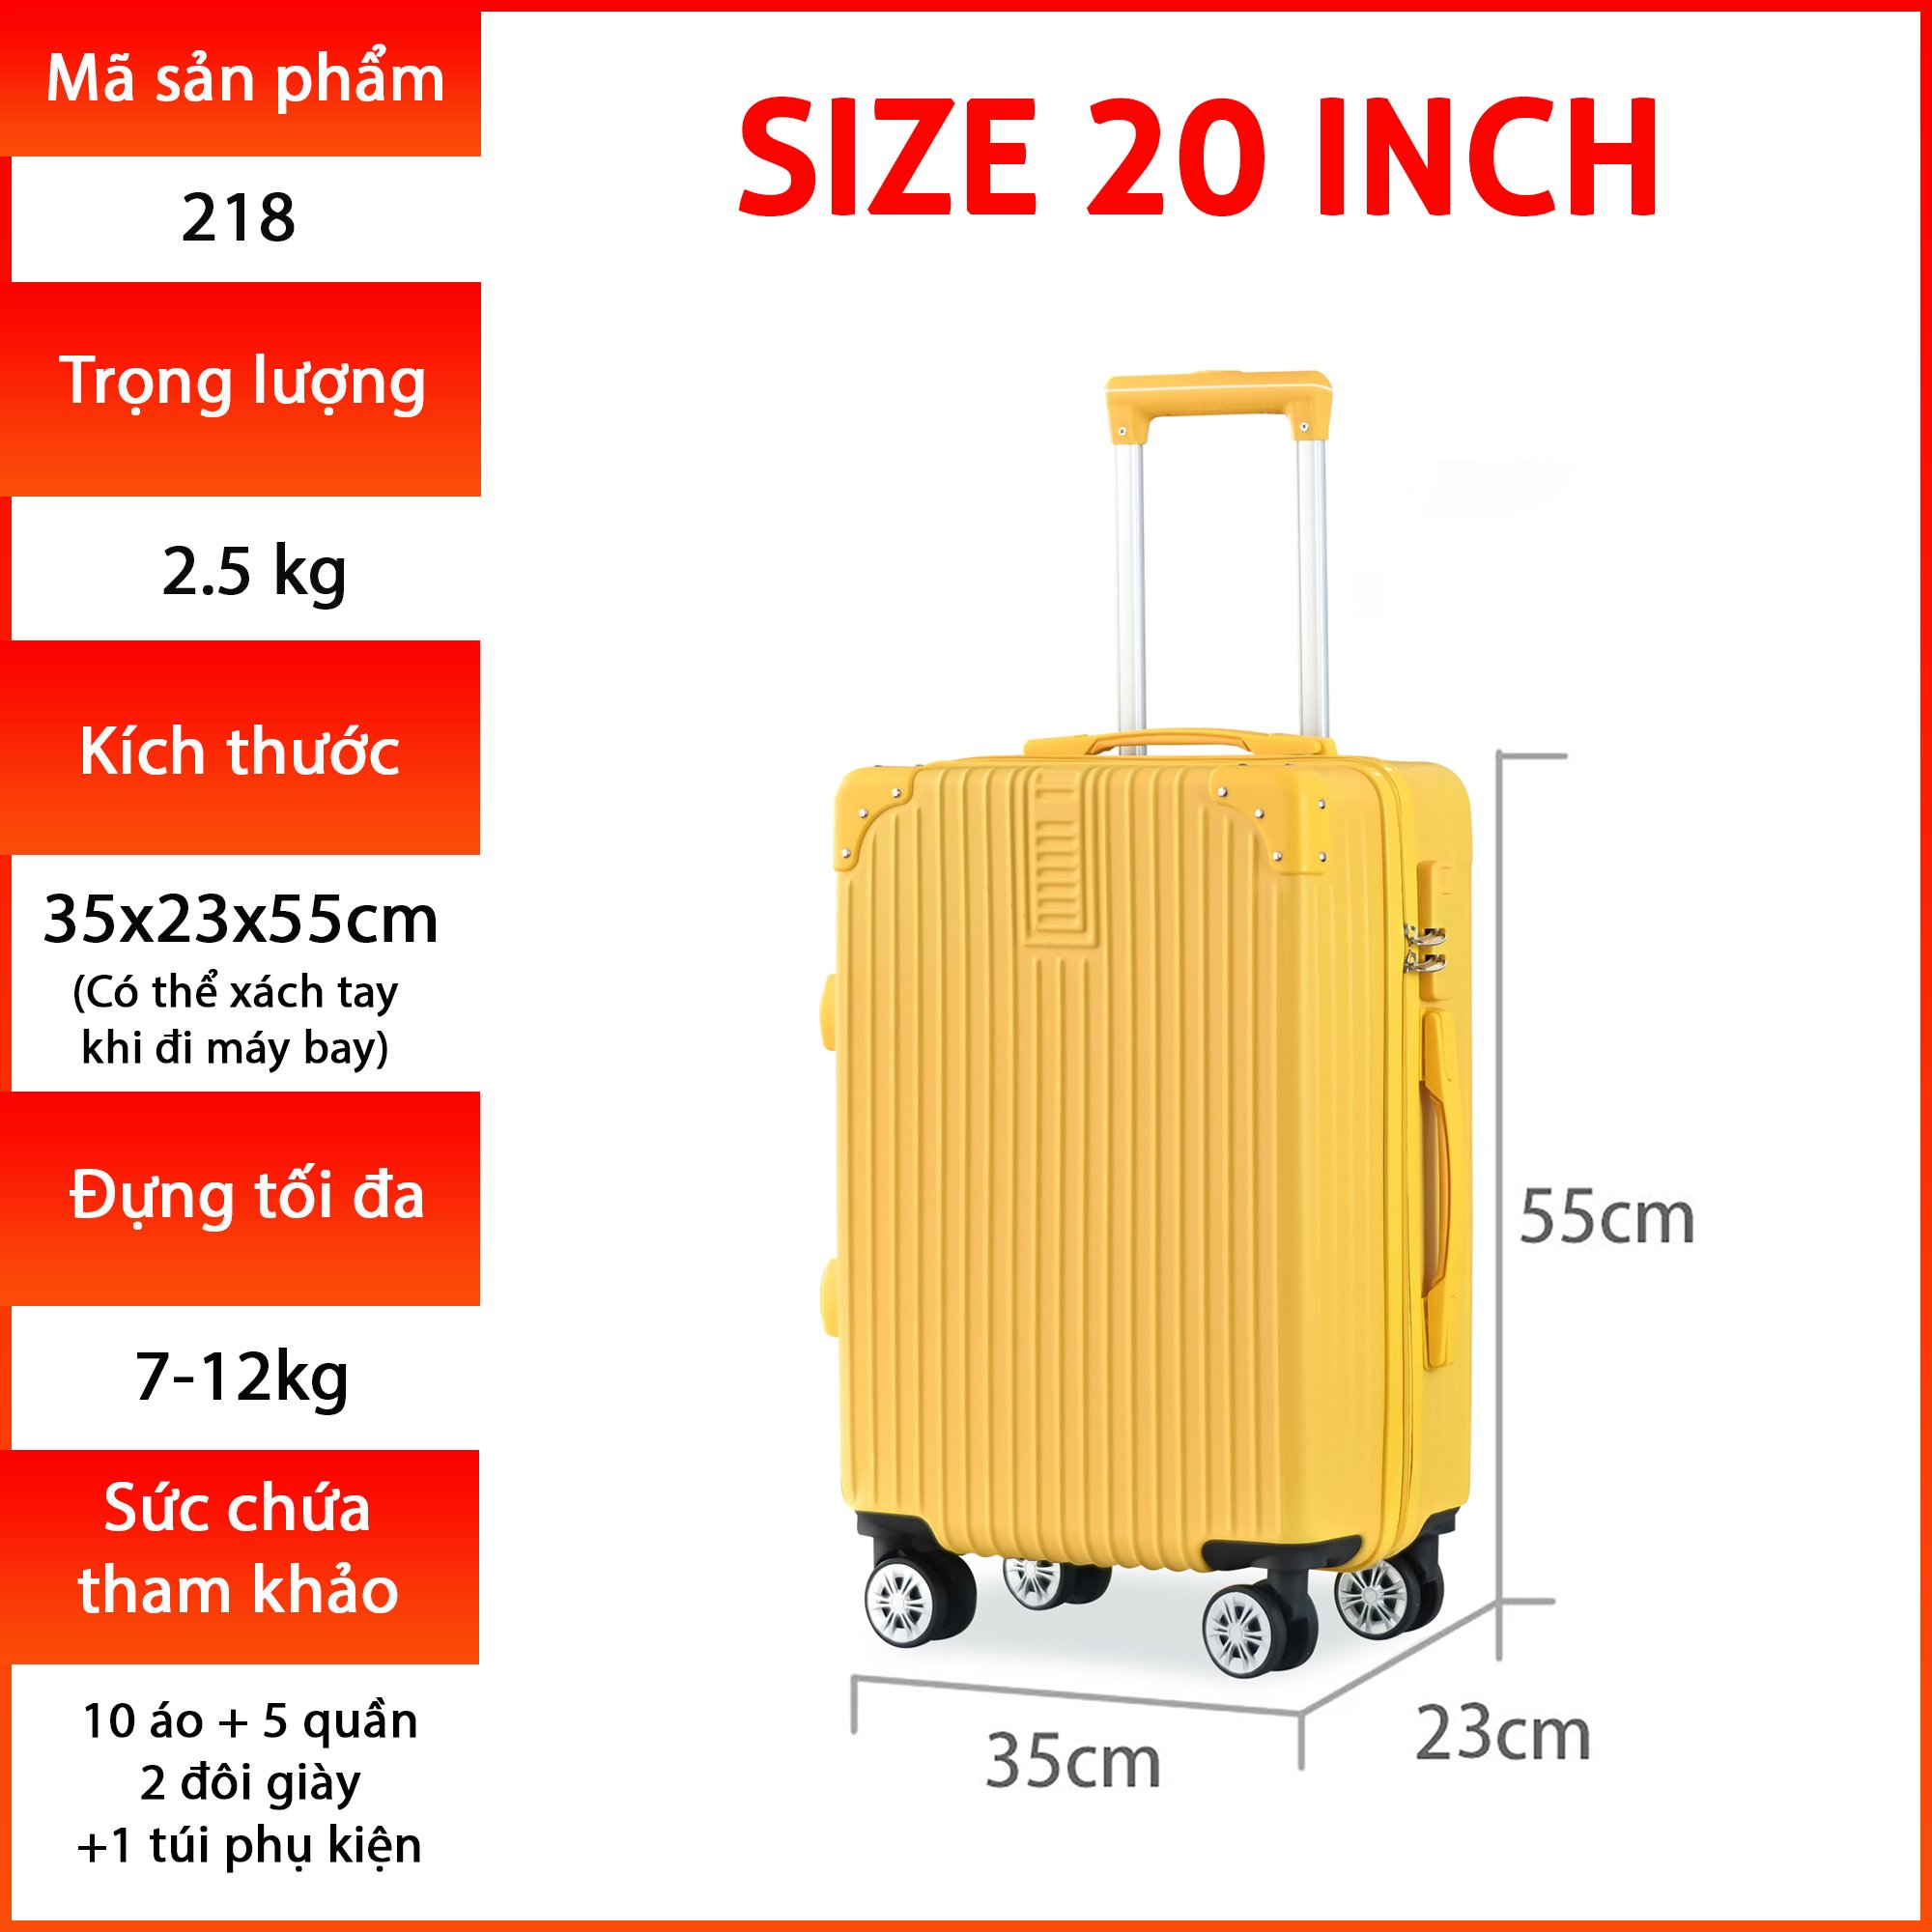 Vali du lịch kéo cao cấp độc quyền chính hãng Size 20inch KS-218 - Xanh lam nhạt